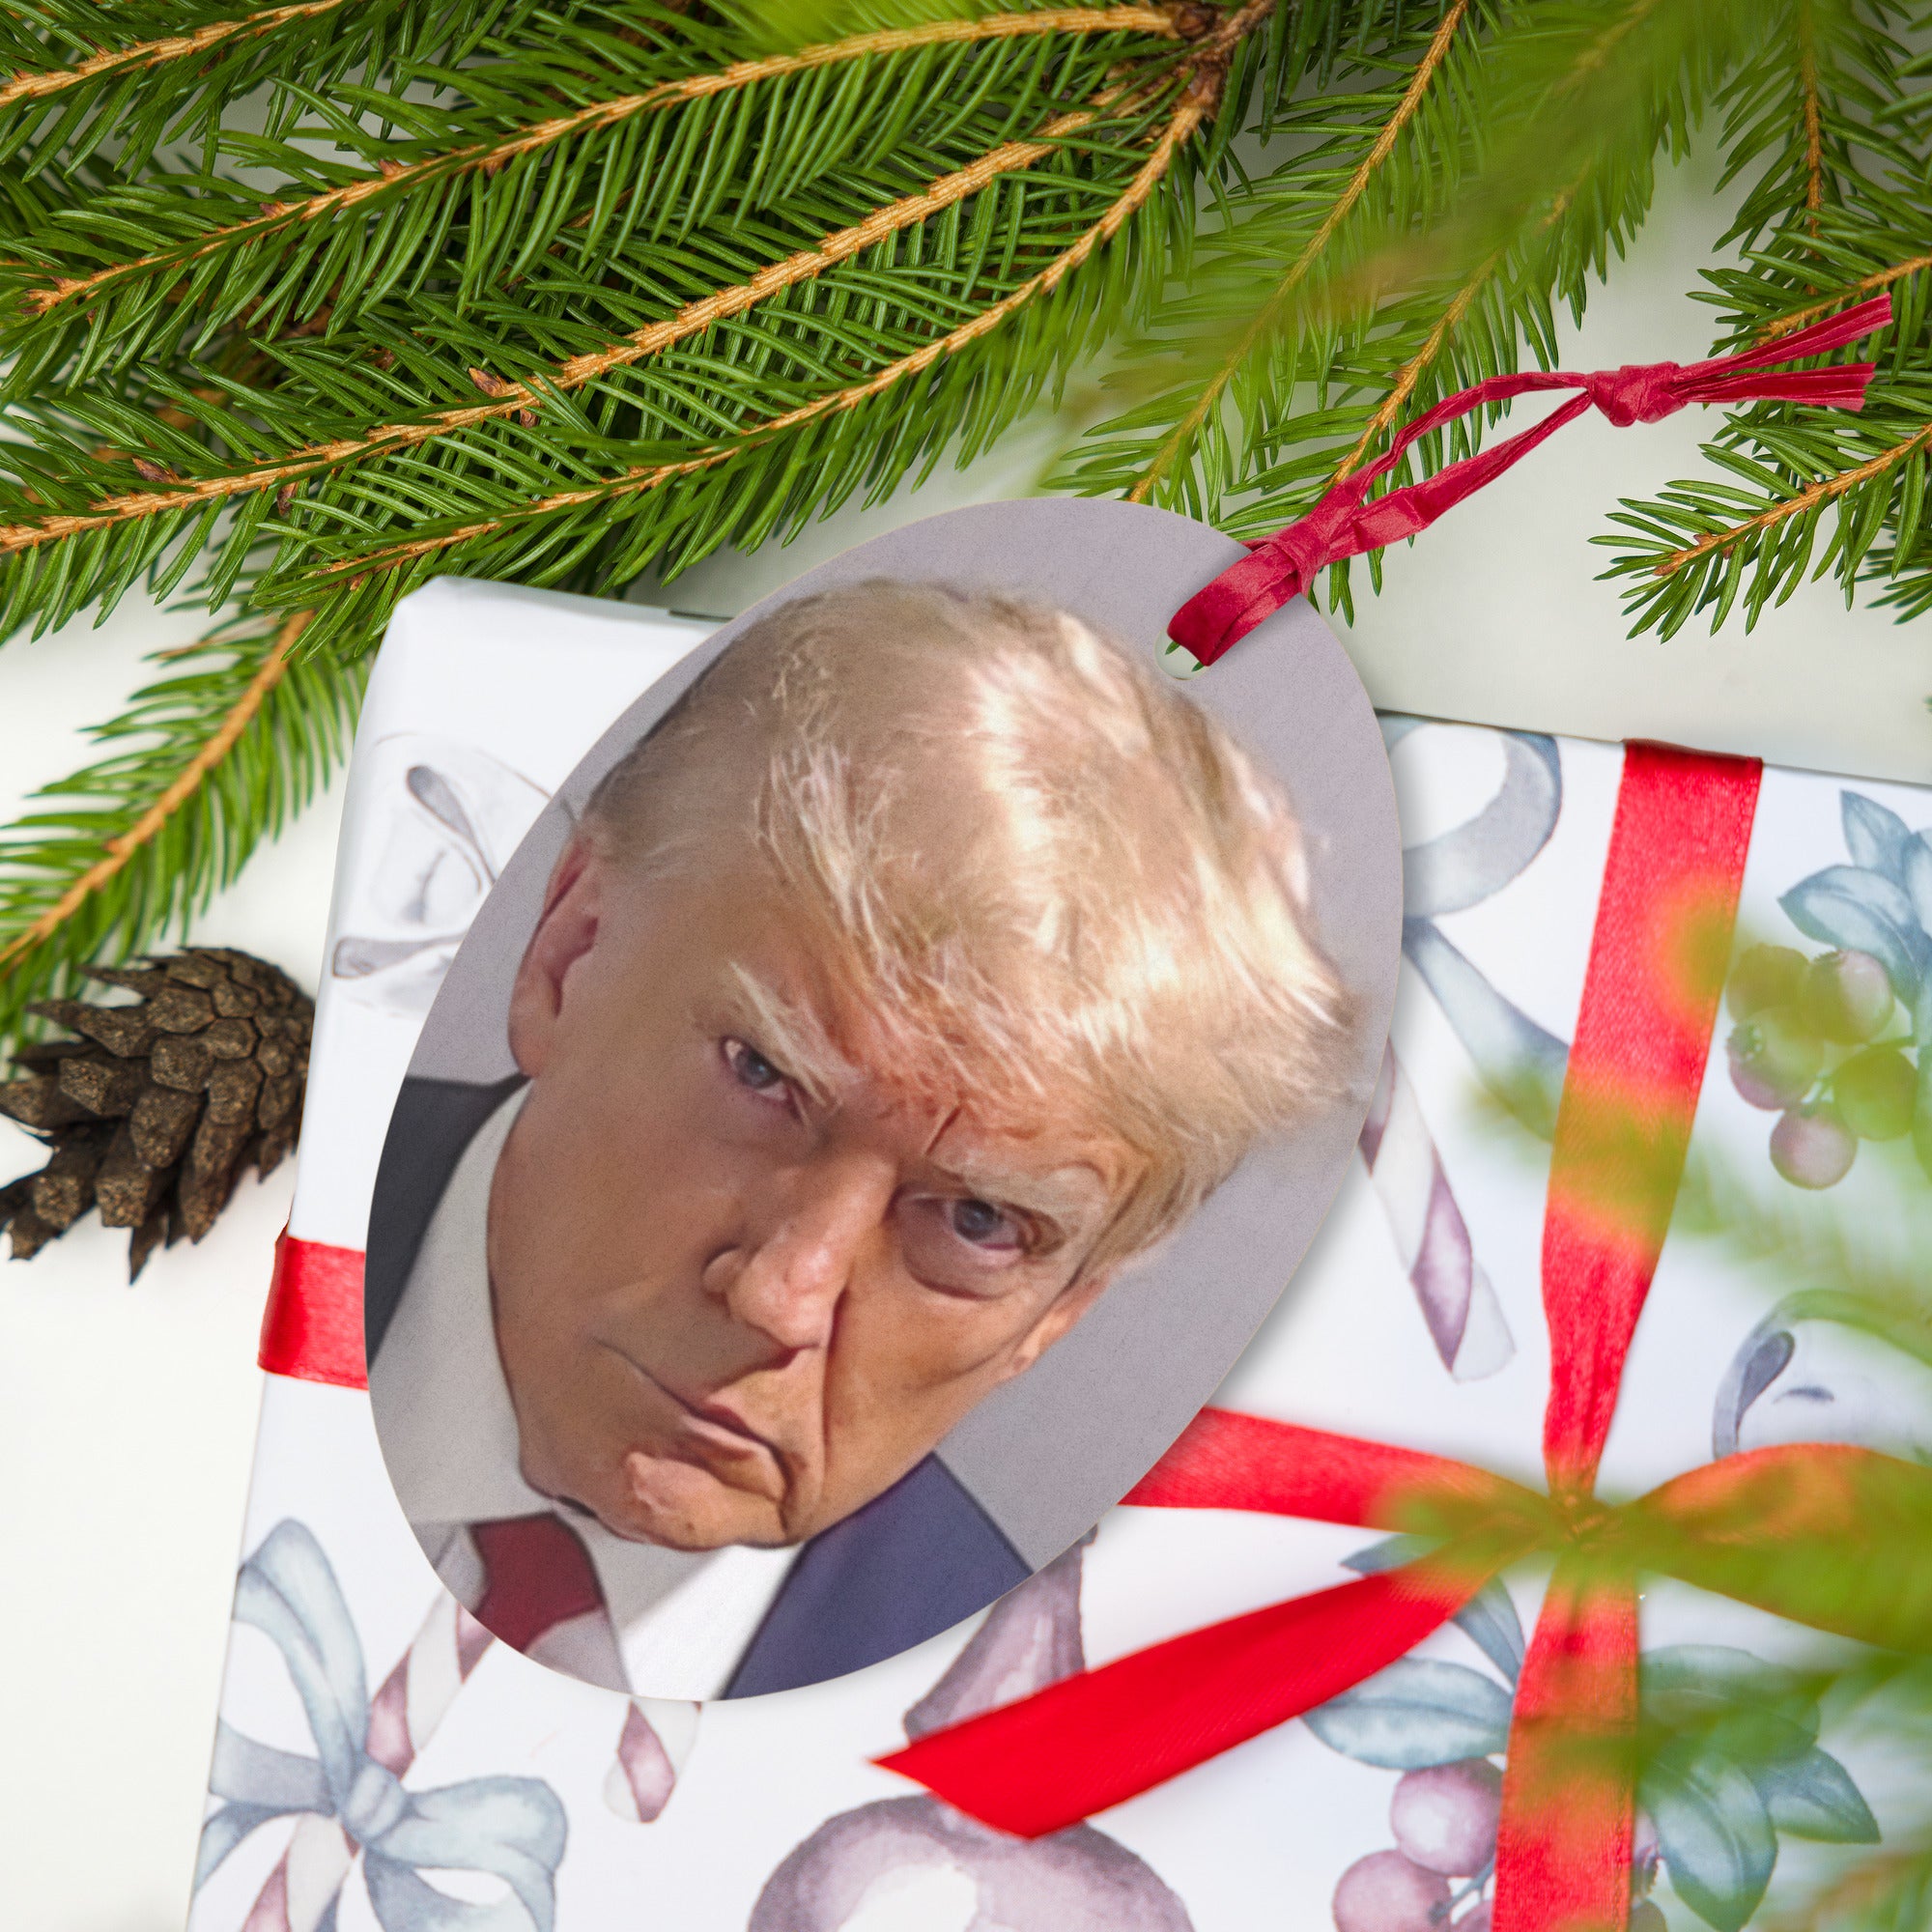 Trump Mugshot Wooden Ornaments